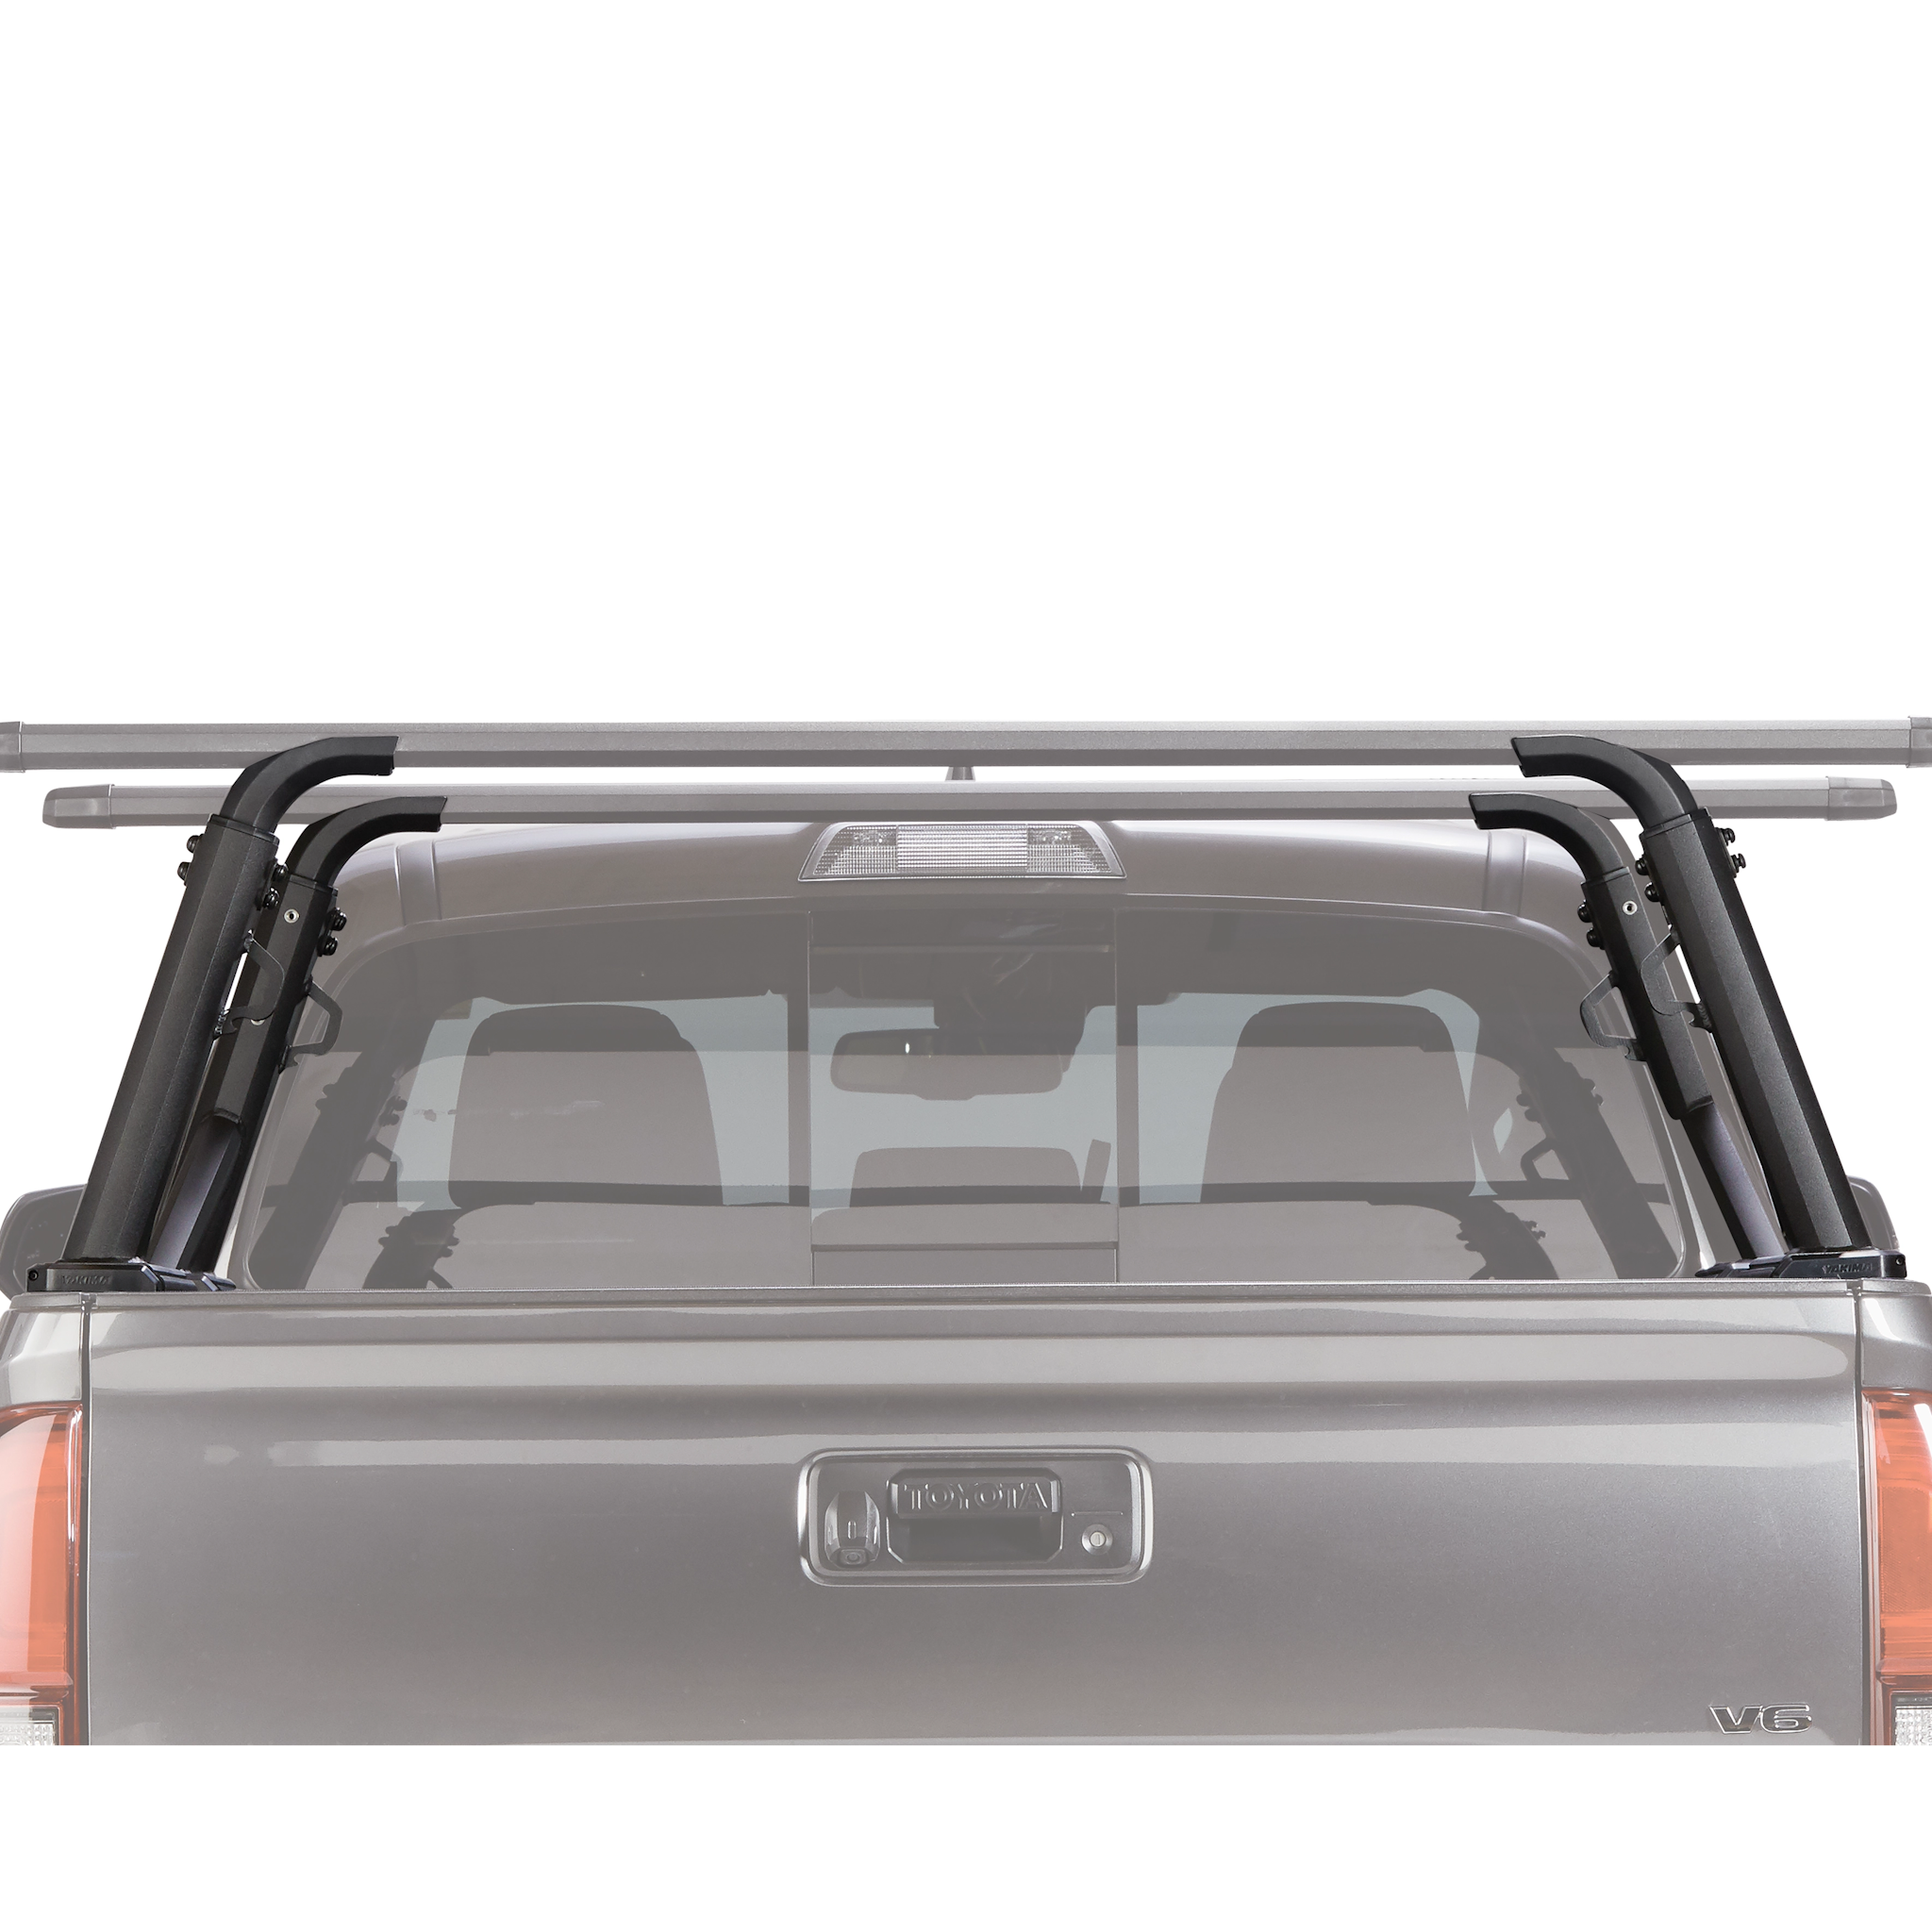 Overhaul HD truck rack rear height adjustability low